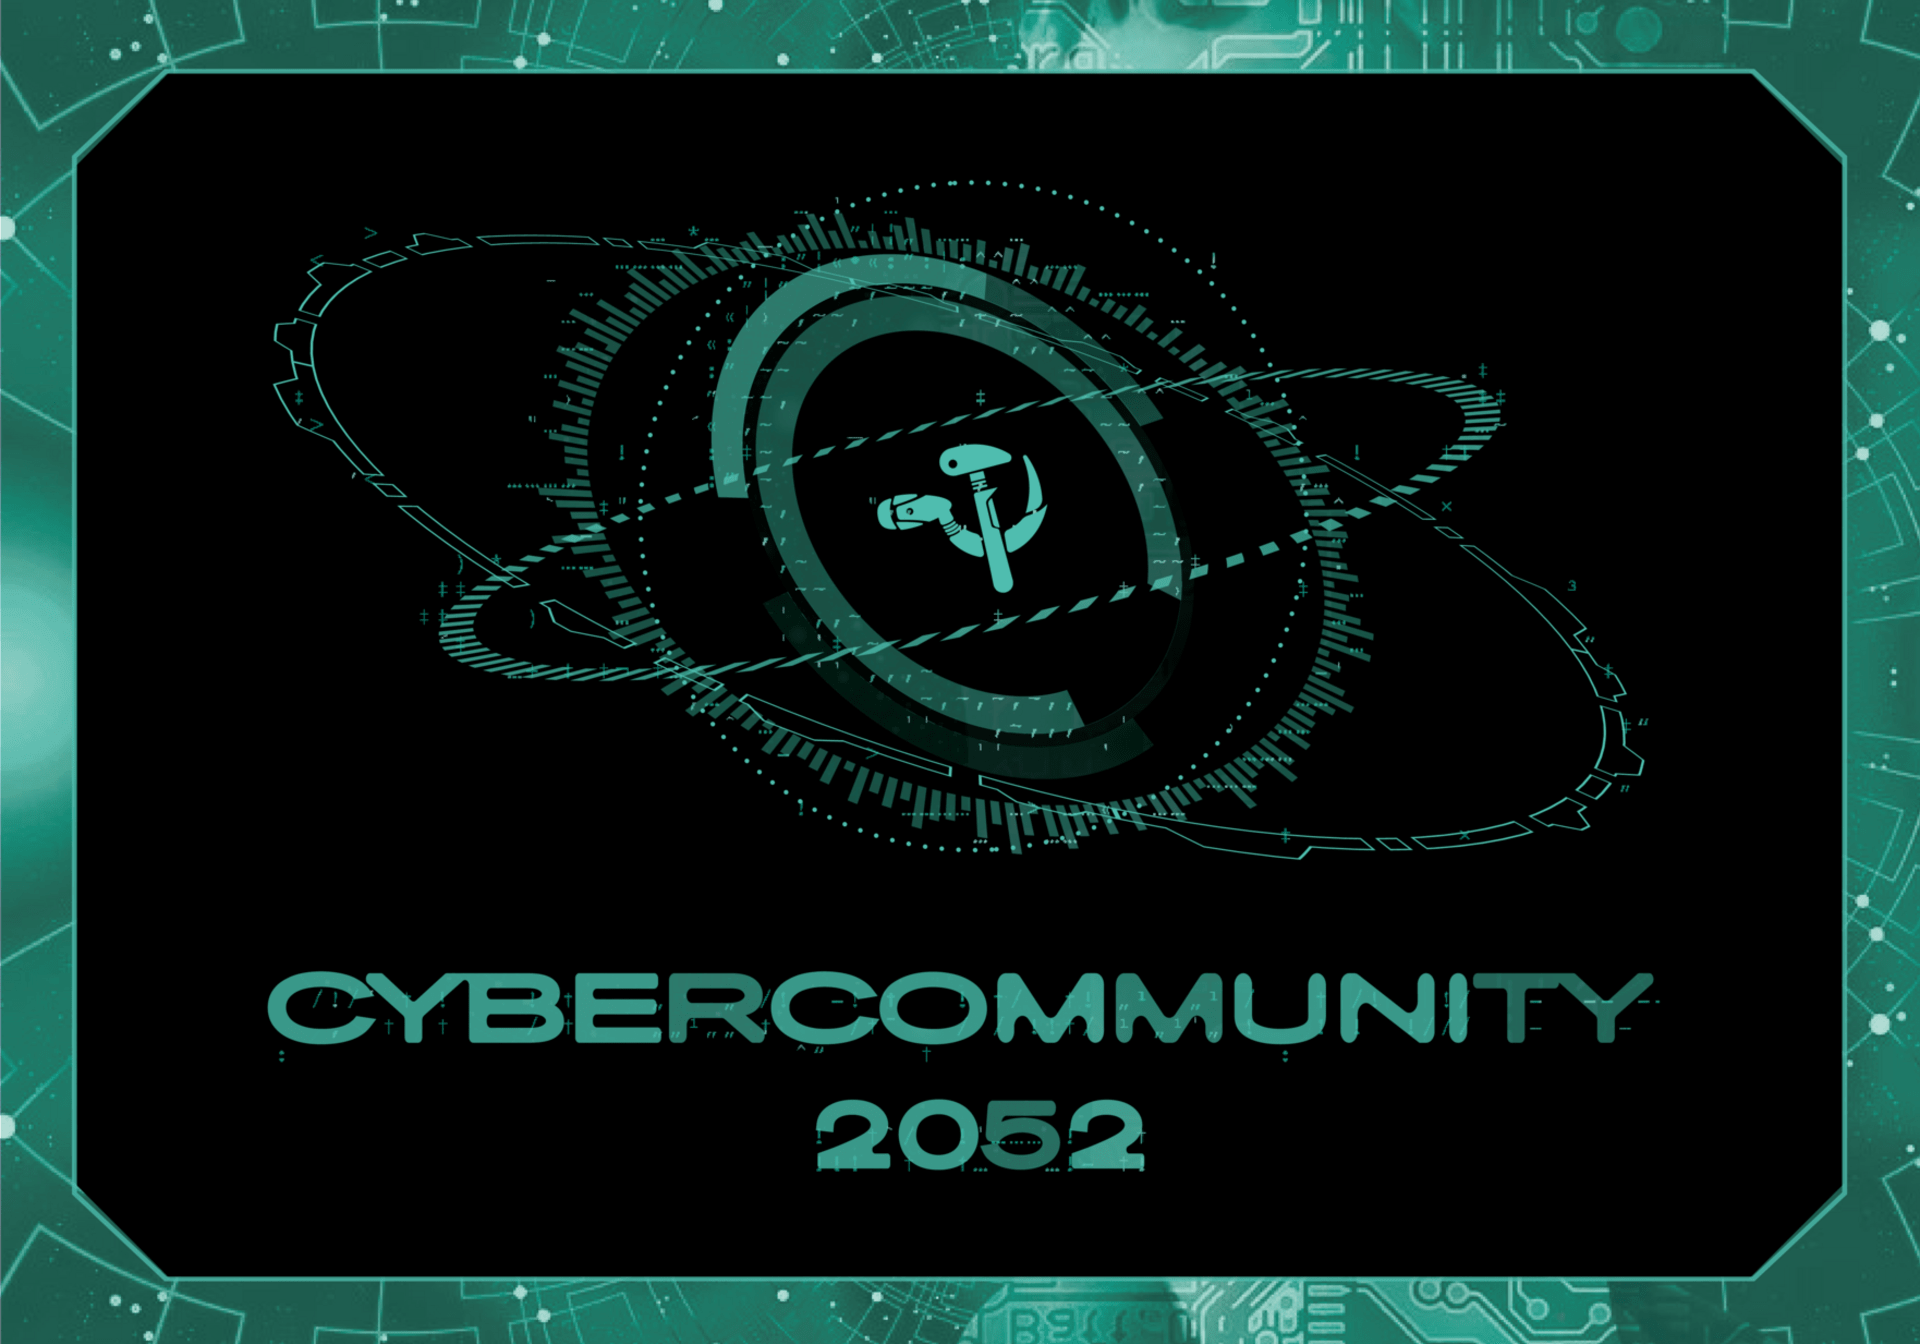 Cybercommunity 2052